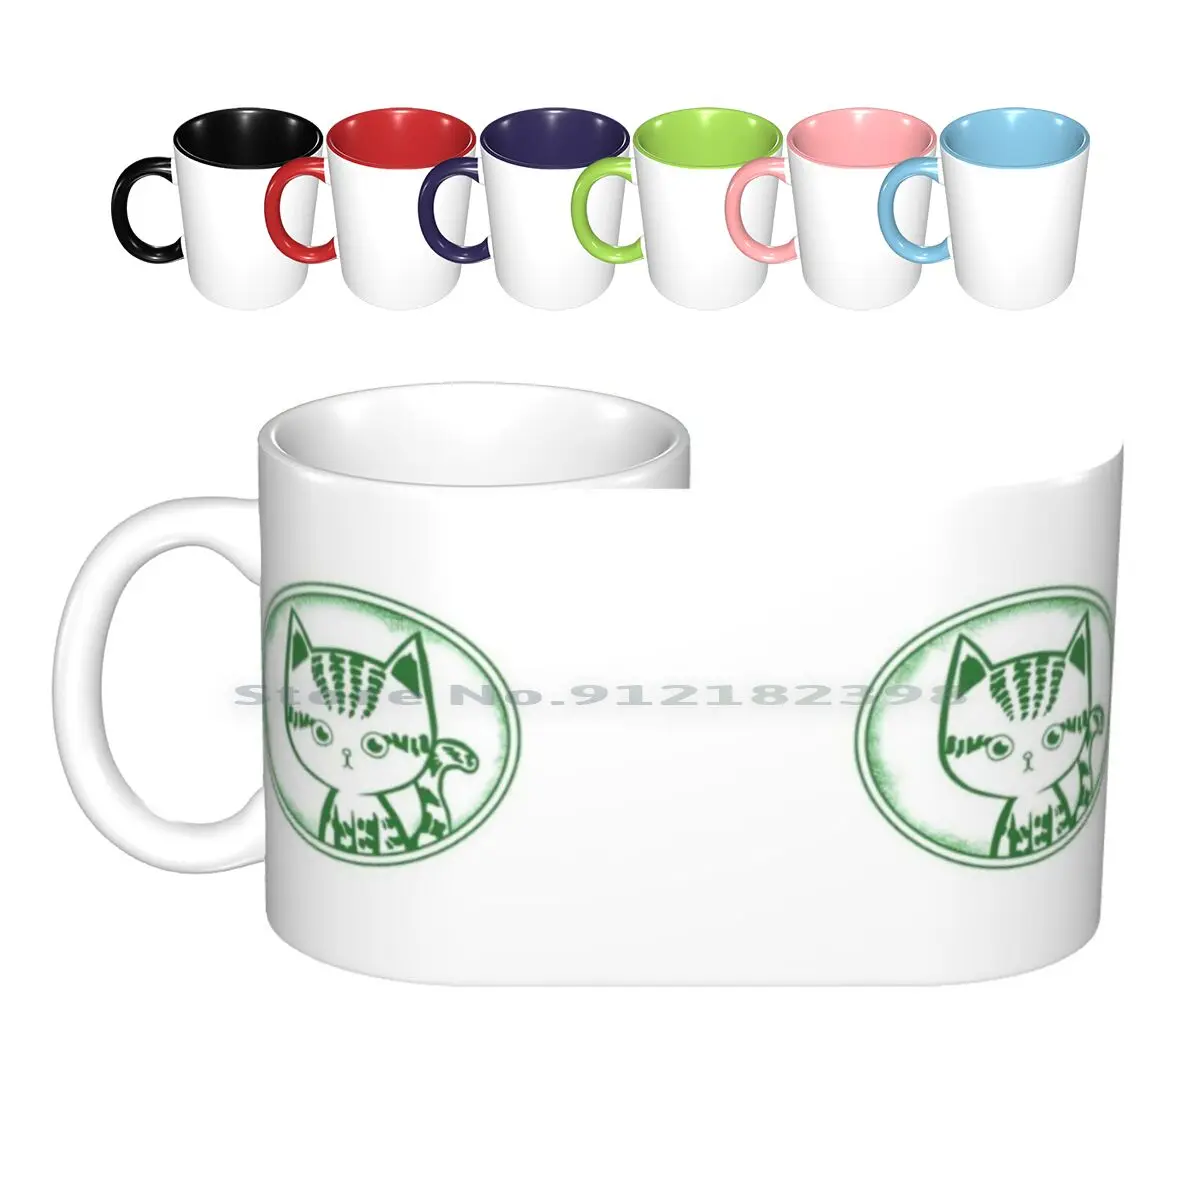 

Кружка в виде кошки-паломника, керамические кружки, кофейные чашки, Кружка для молока и чая, кружка-паломник против мира, кошка-паломник Гиде...